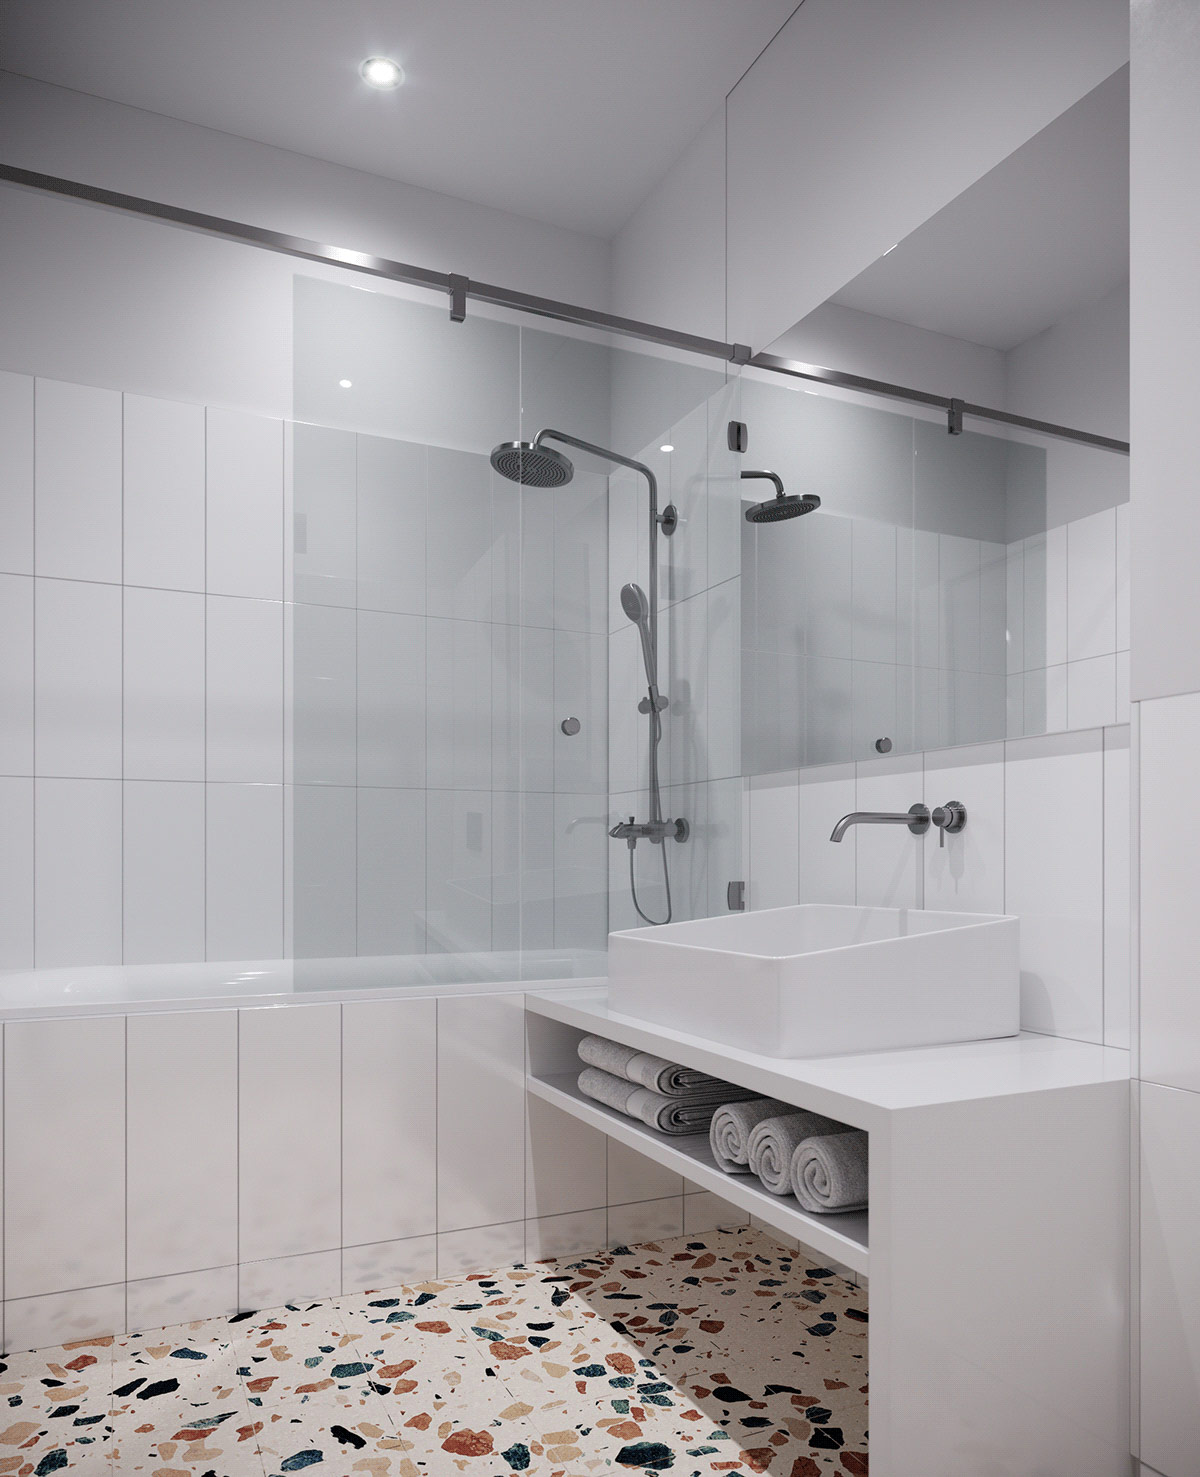 hình ảnh phòng tắm căn hộ nhỏ màu trắng thanh lịch với gạch terrazzo lát sàn